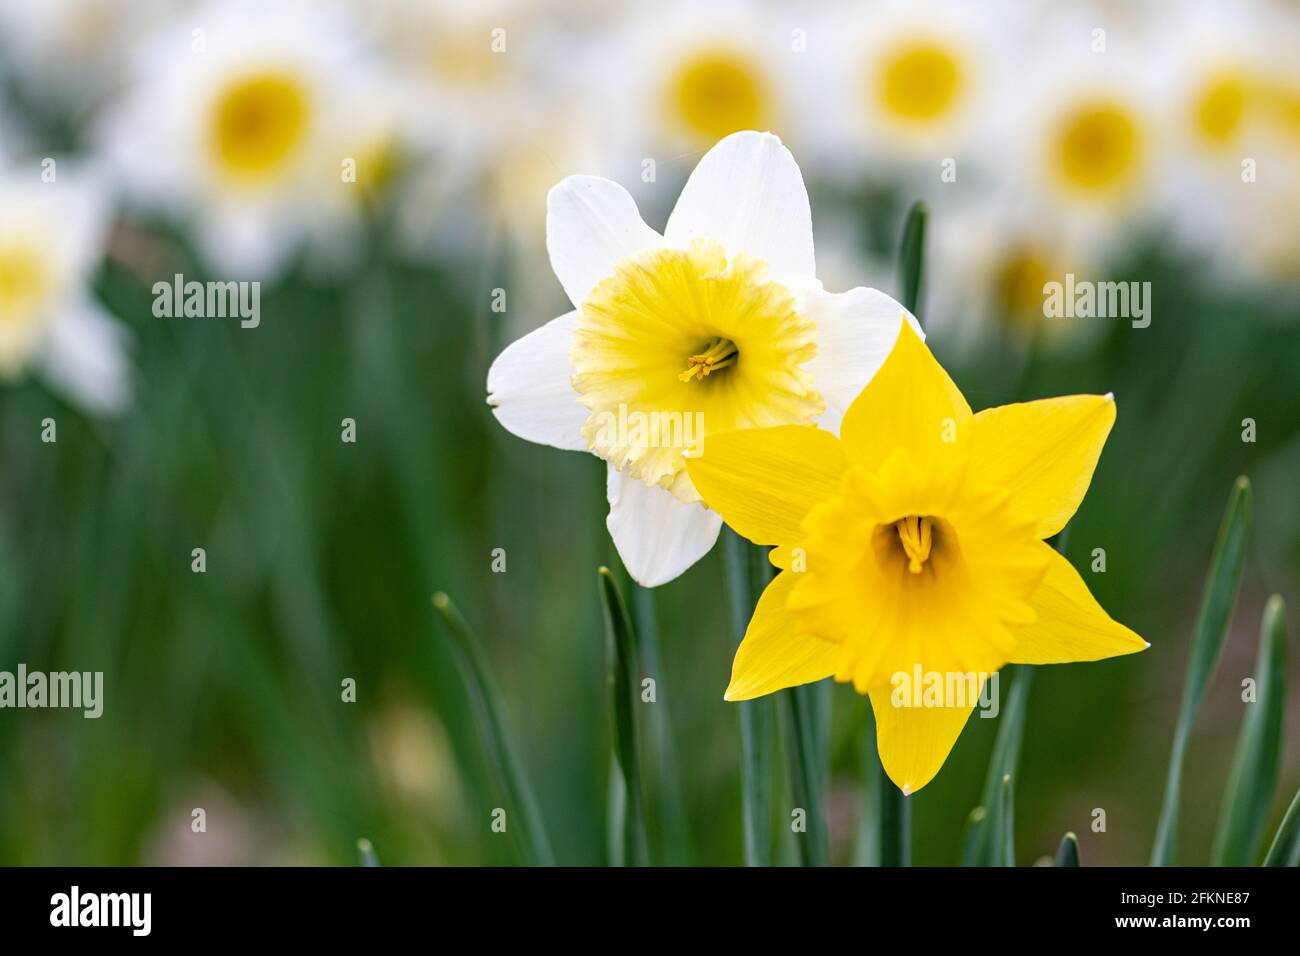 Couple de fleurs de jonquille jaune et blanche, narcisse, fleur vivace de printemps et plantes parmi l'herbe verte dans un champ, un parc ou un jardin Banque D'Images